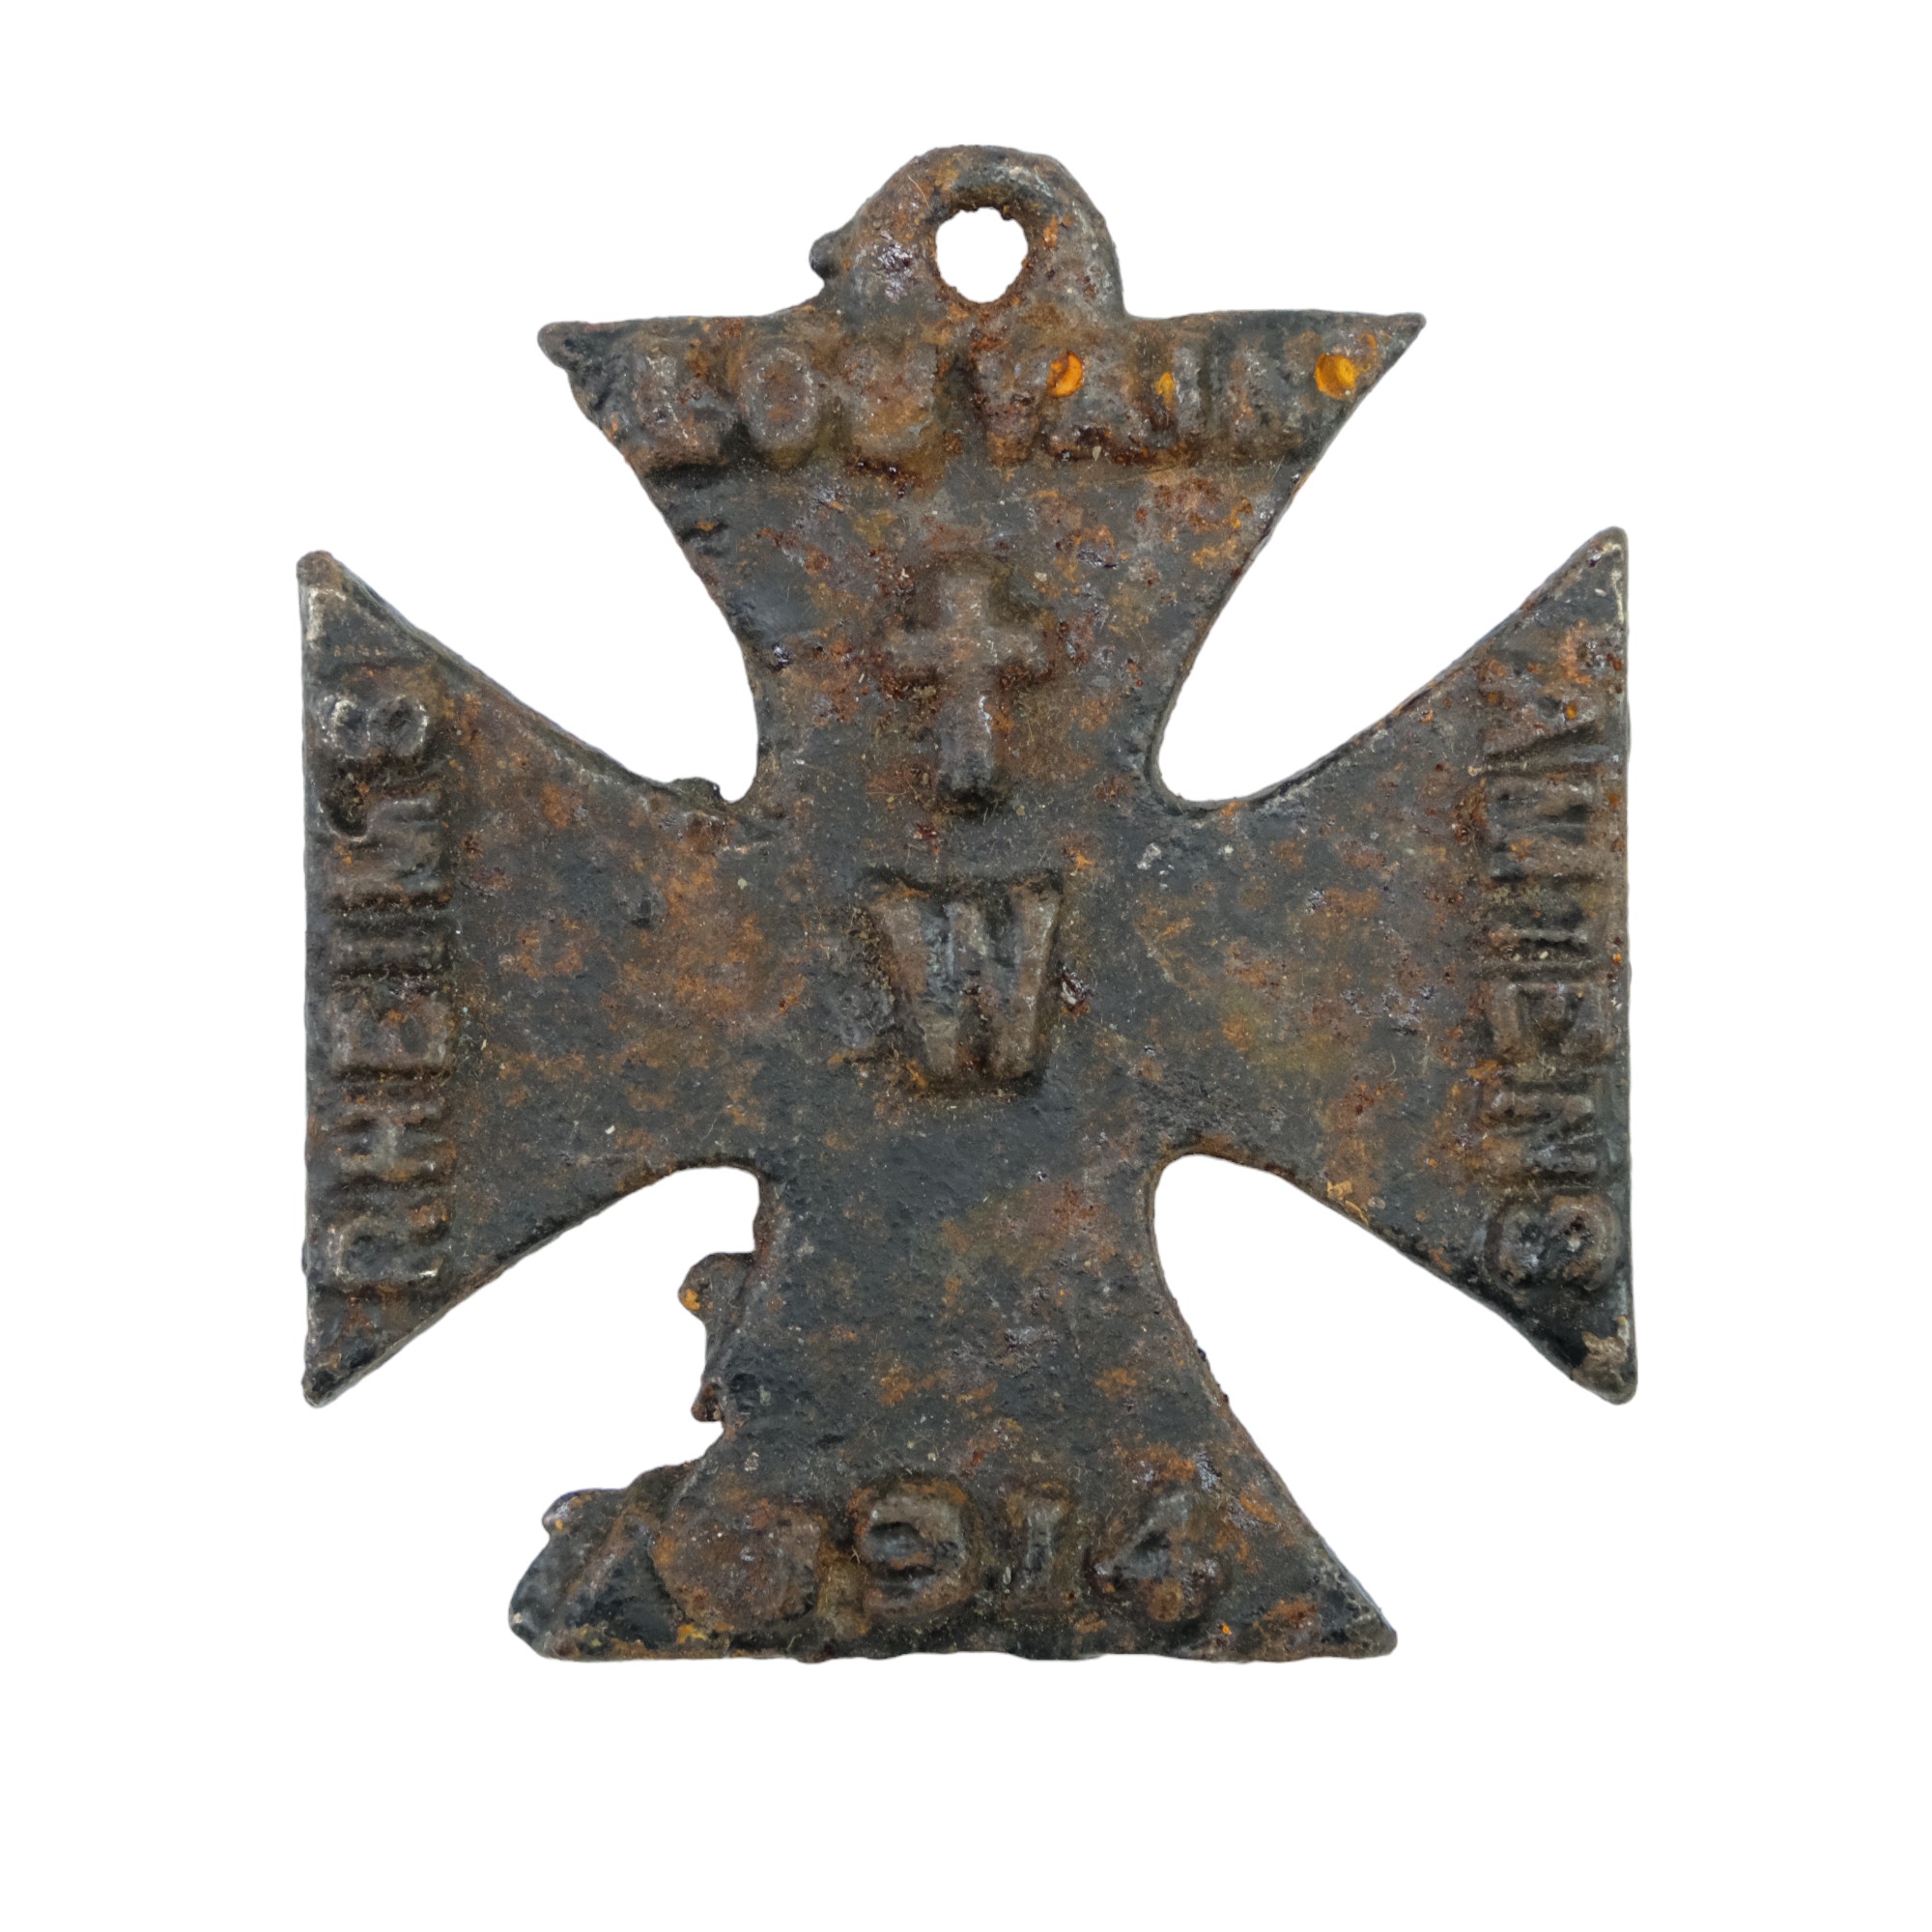 A Great War Allied mock German iron cross propaganda medal